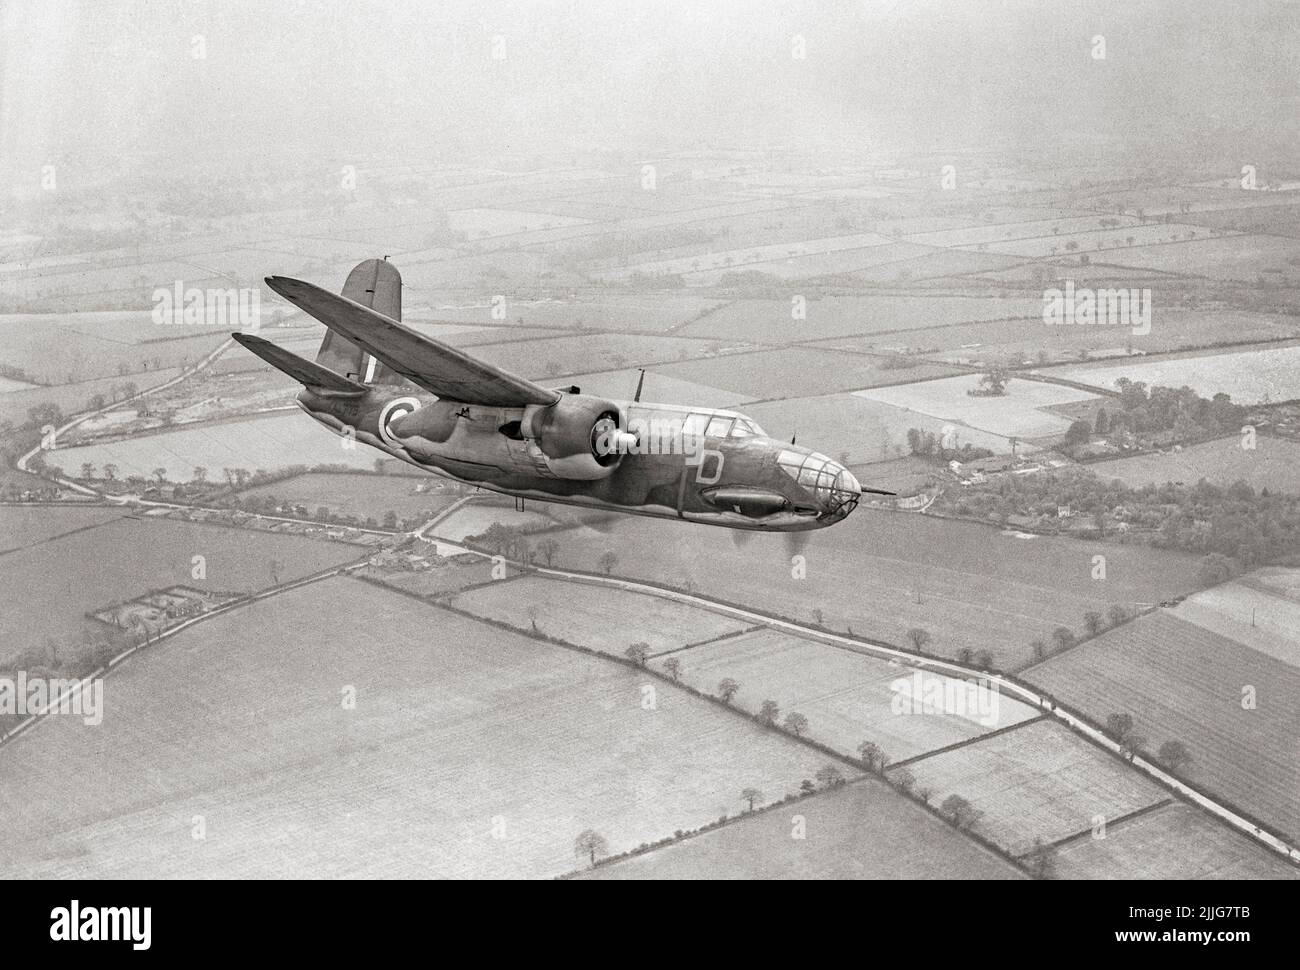 Ein Boston Mark III von No. 88 Squadron RAF mit Sitz in Attlebridge, Norfolk, im Flug. Es war ein amerikanischer mittlerer Bomber, Angriffsflugzeug, Nachteindringling, Nachtjäger und Aufklärungsflugzeug des Zweiten Weltkriegs Stockfoto